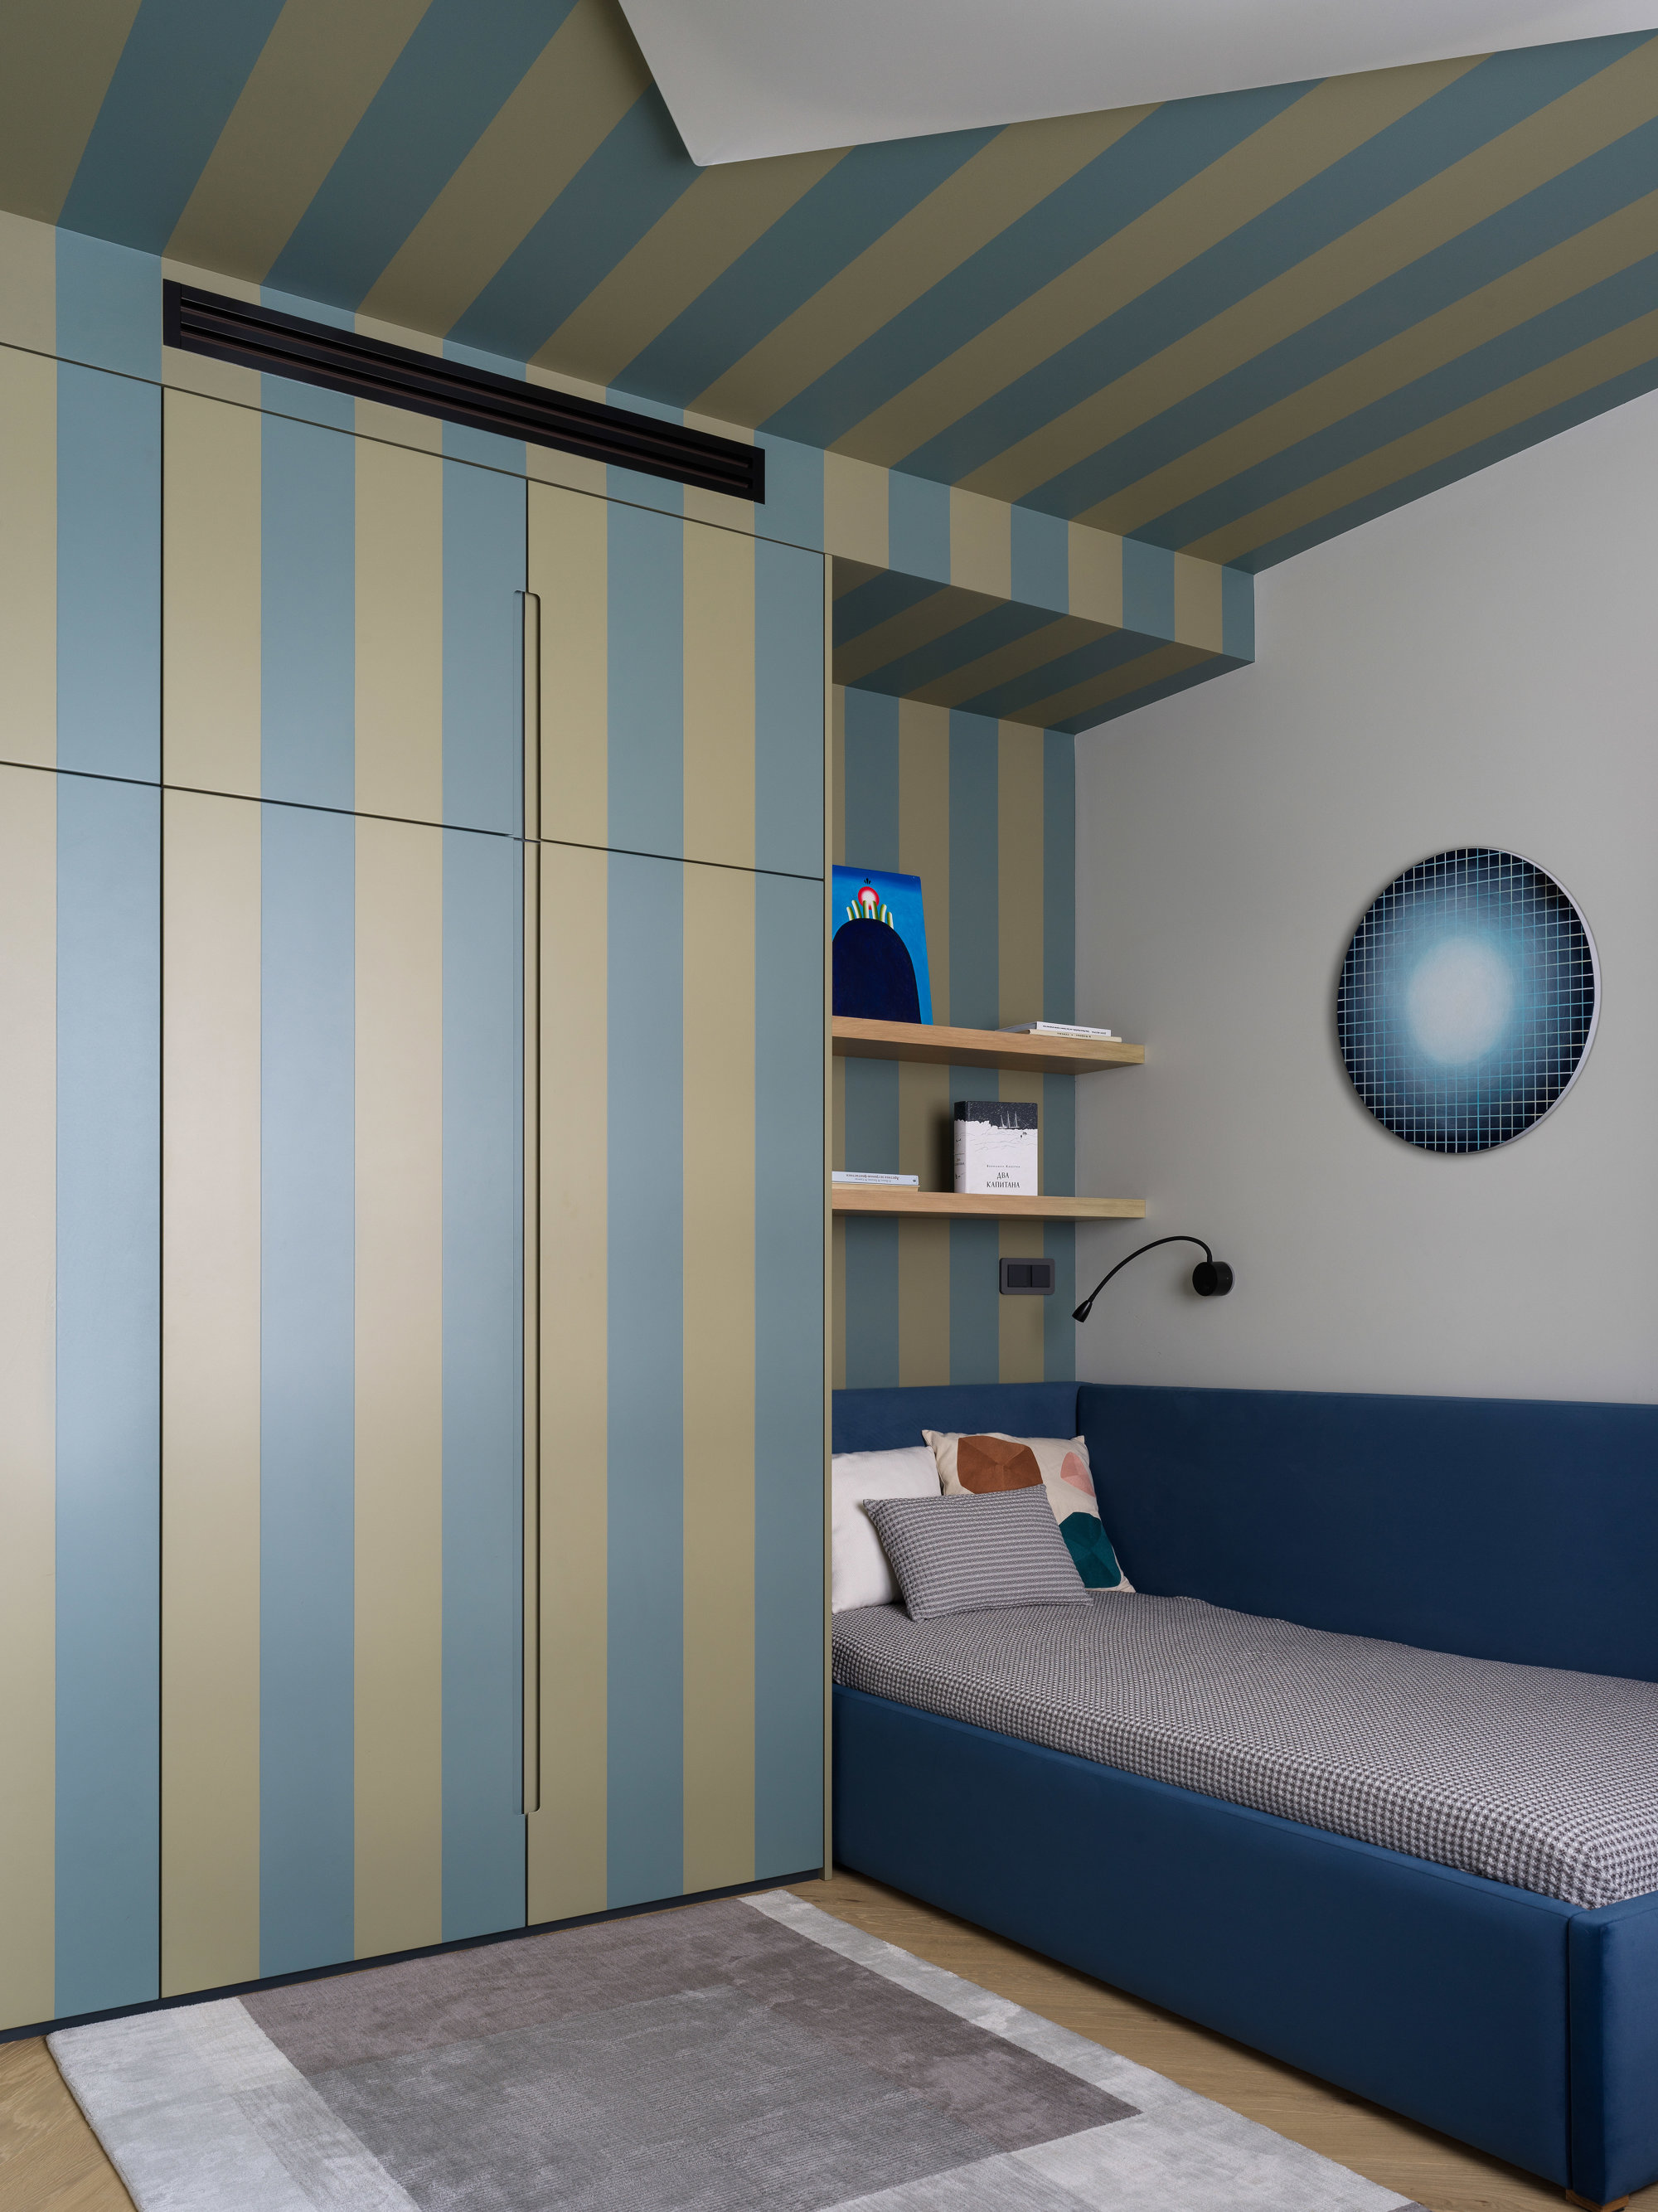 Dormitorio infantil con muebles de rayas azules y beige